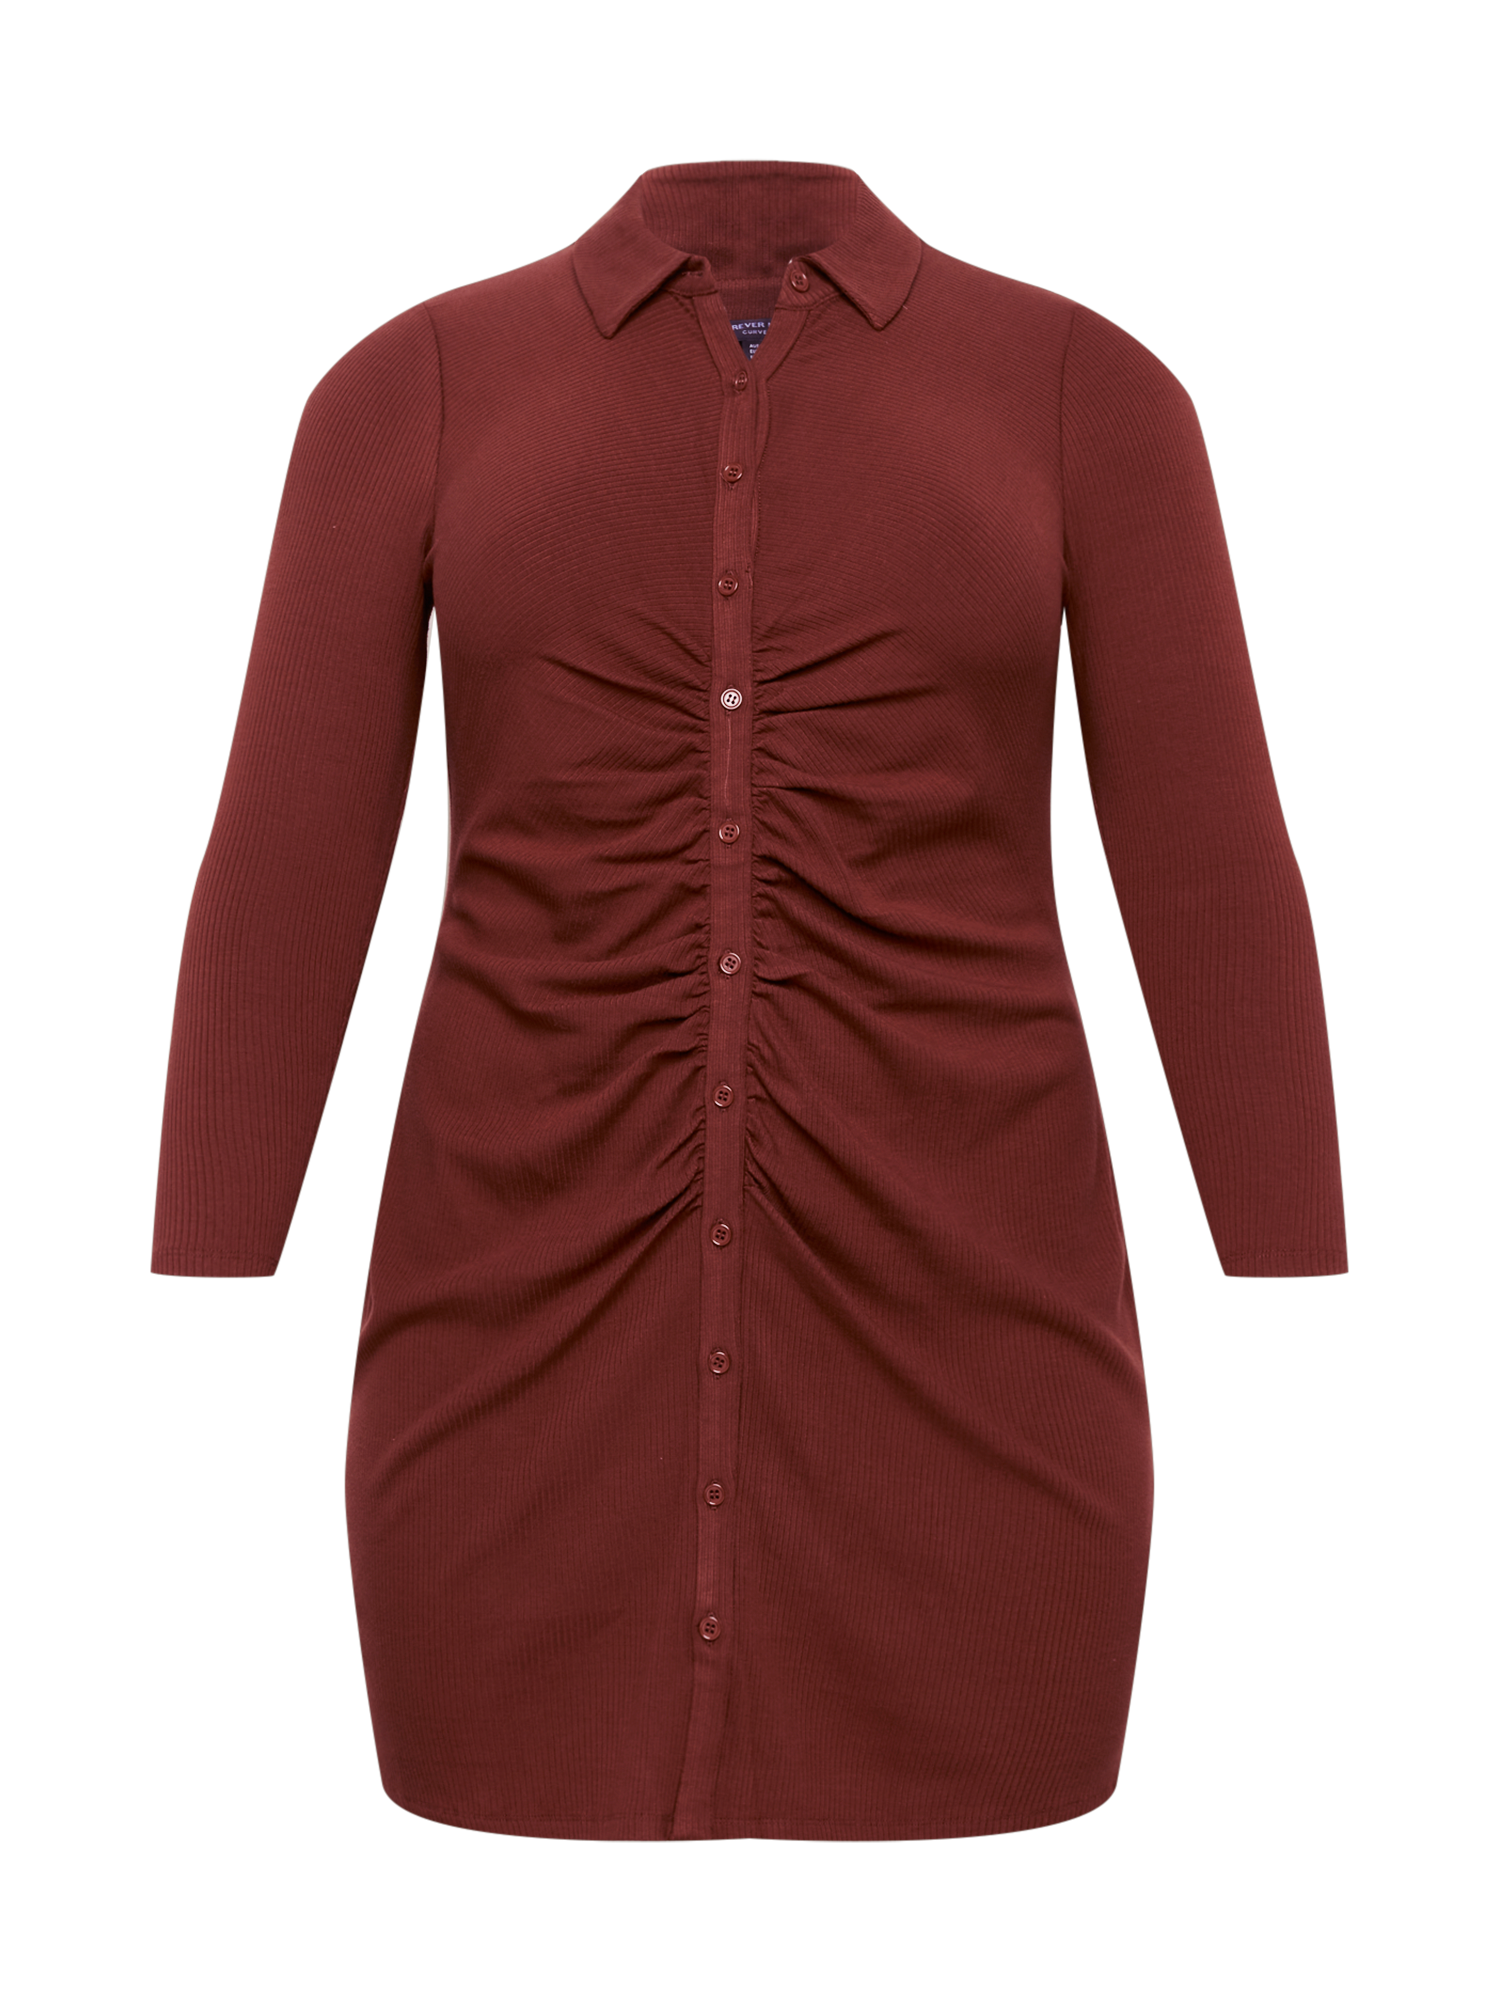 Plus size YGHch Forever New Curve Sukienka koszulowa Tara w kolorze Rdzawobrązowym 